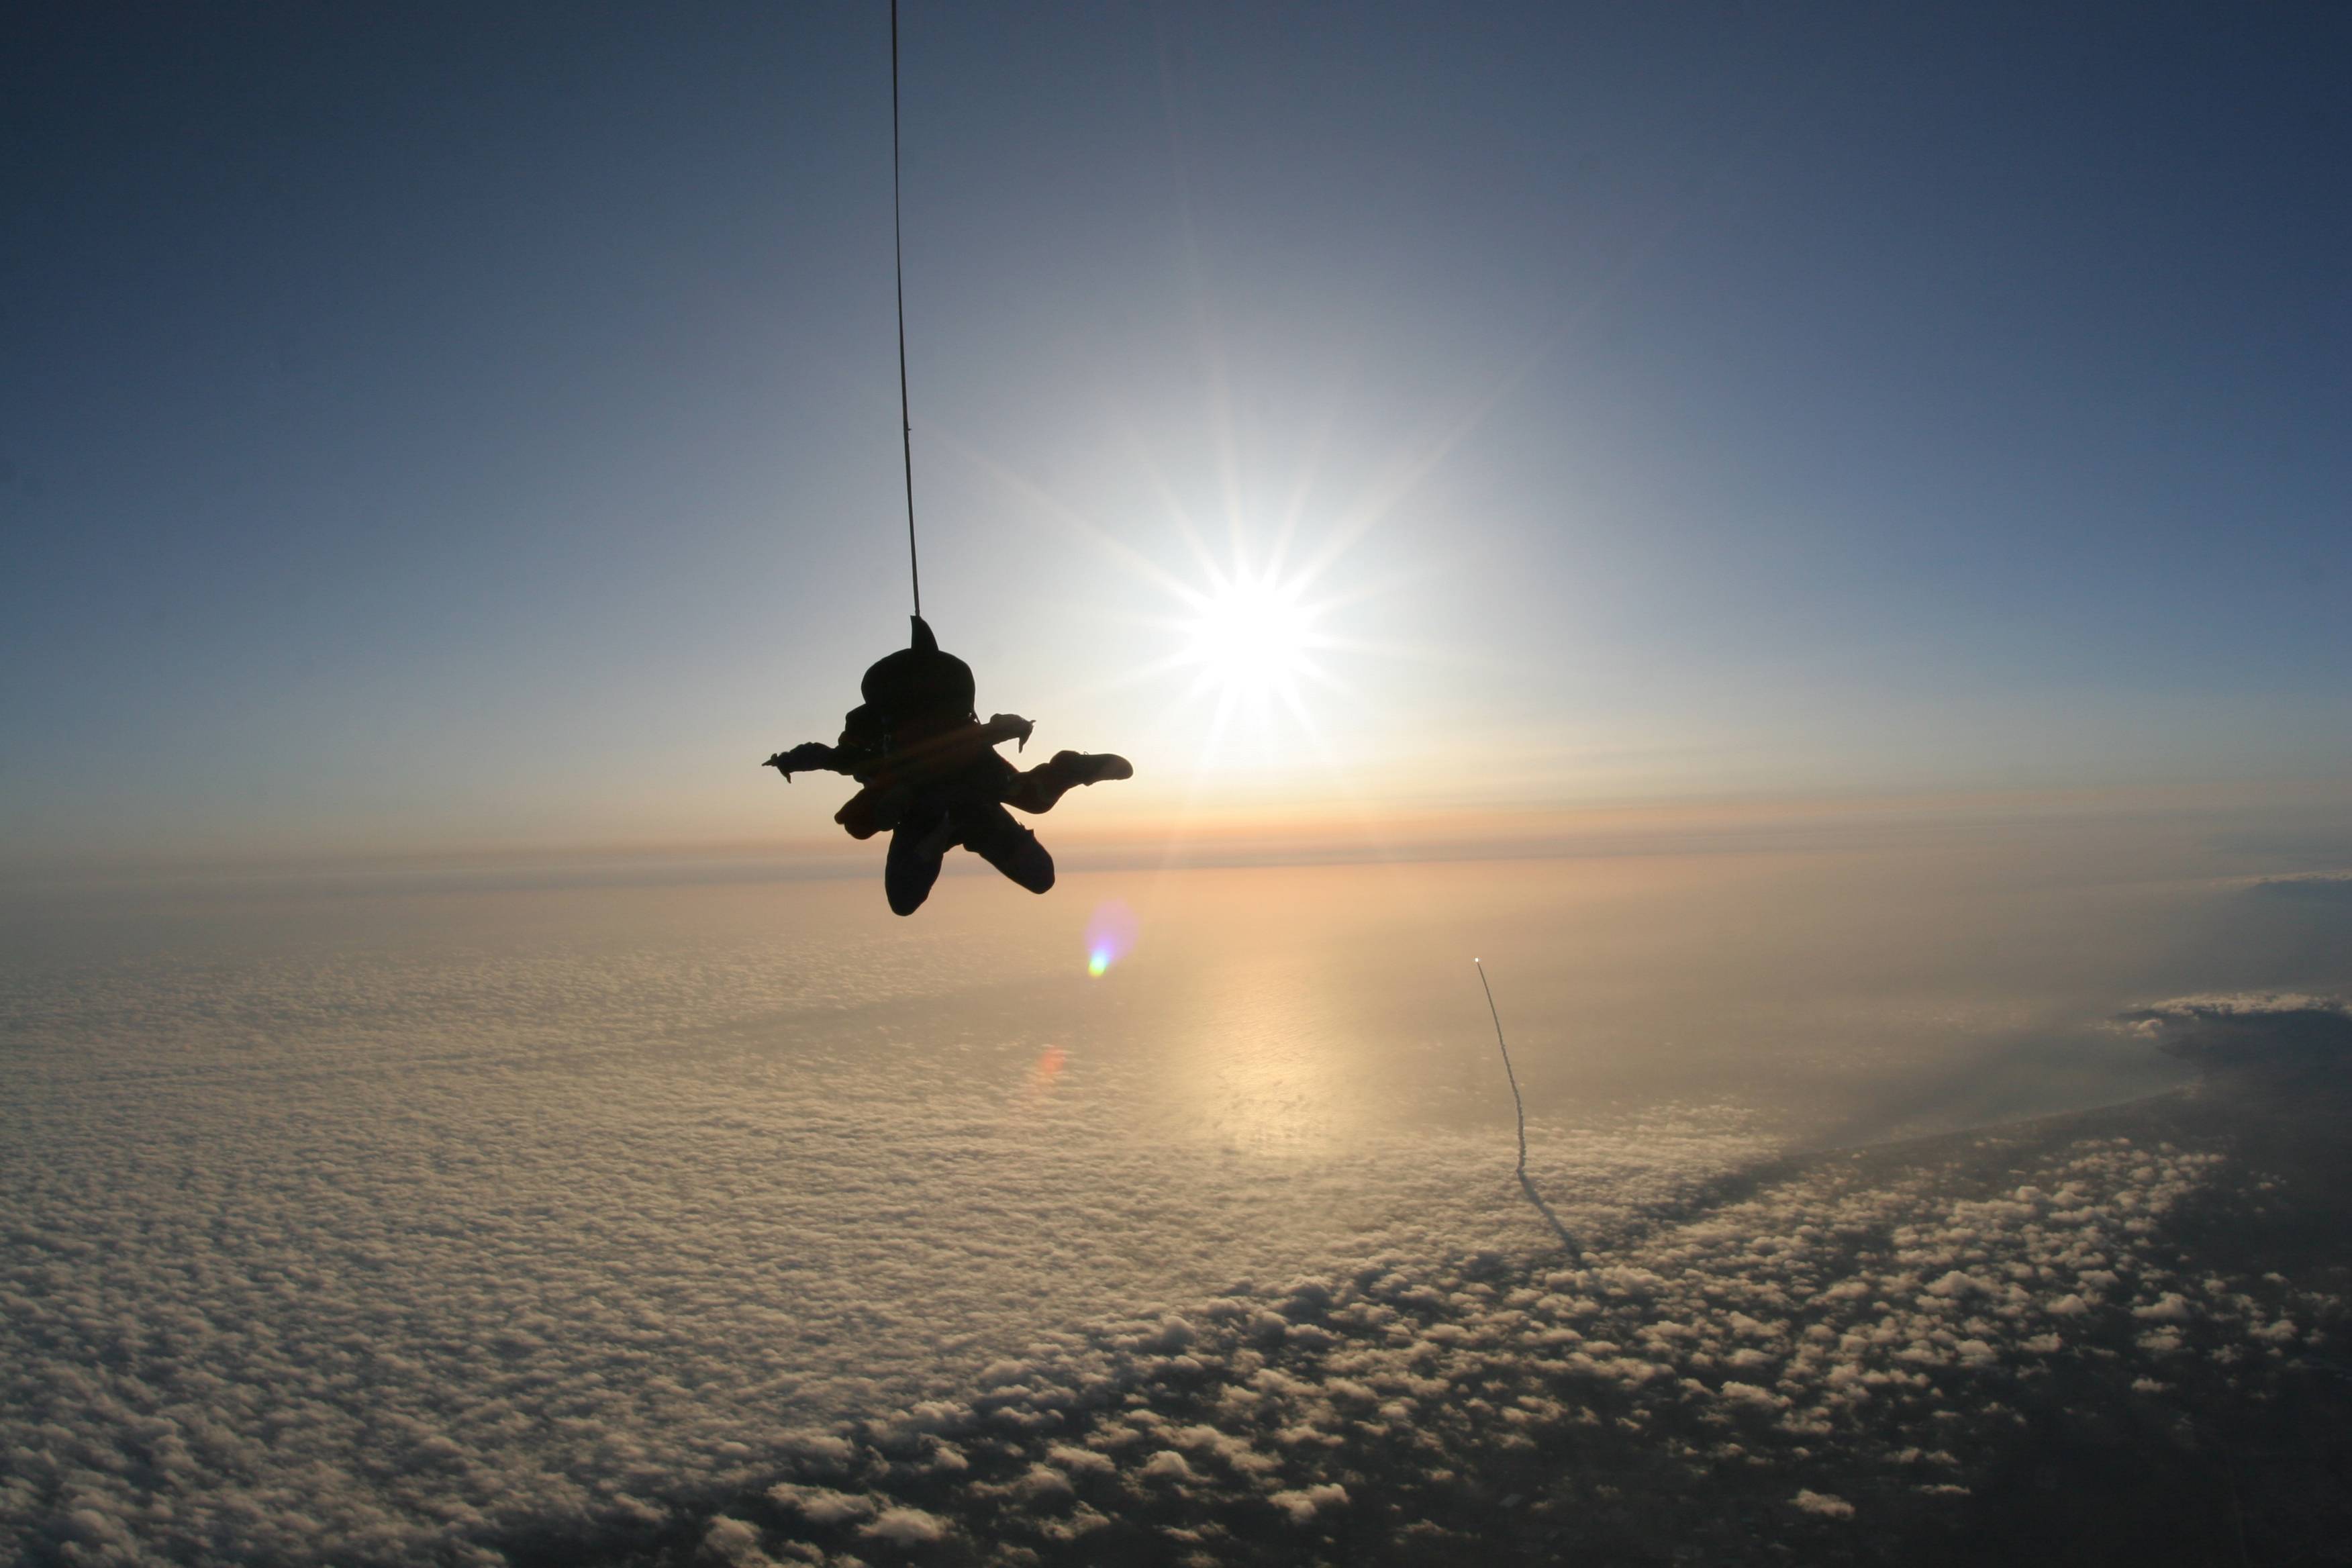 спорт жизнь прыжок парашют море горы sports life jump parachute sea mountains скачать